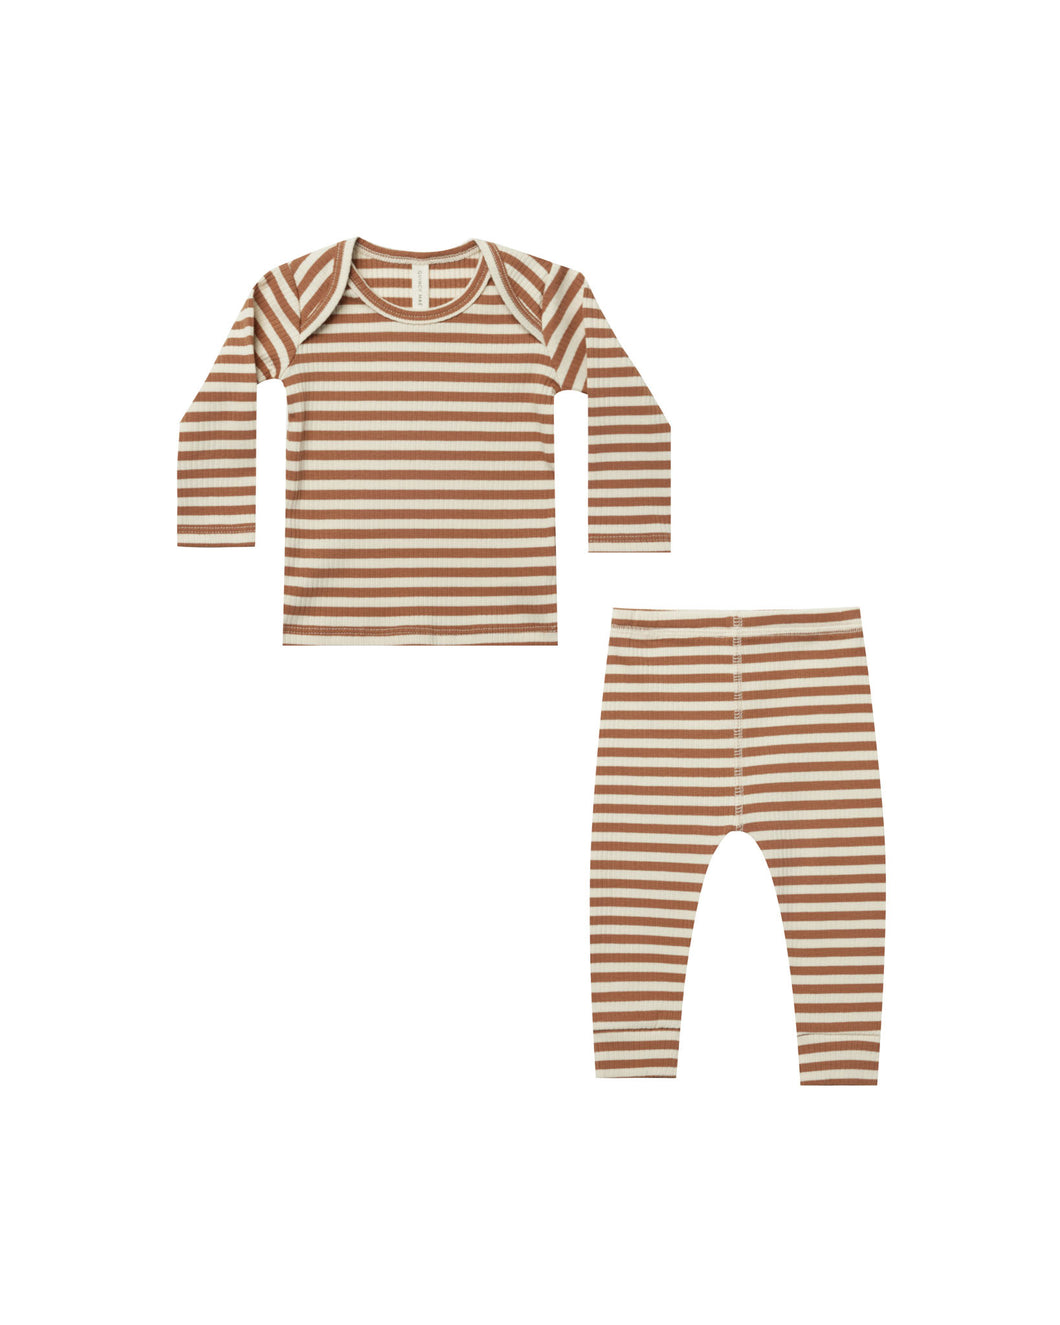 Cinnamon Stripe Ribbed Top + Pant Set